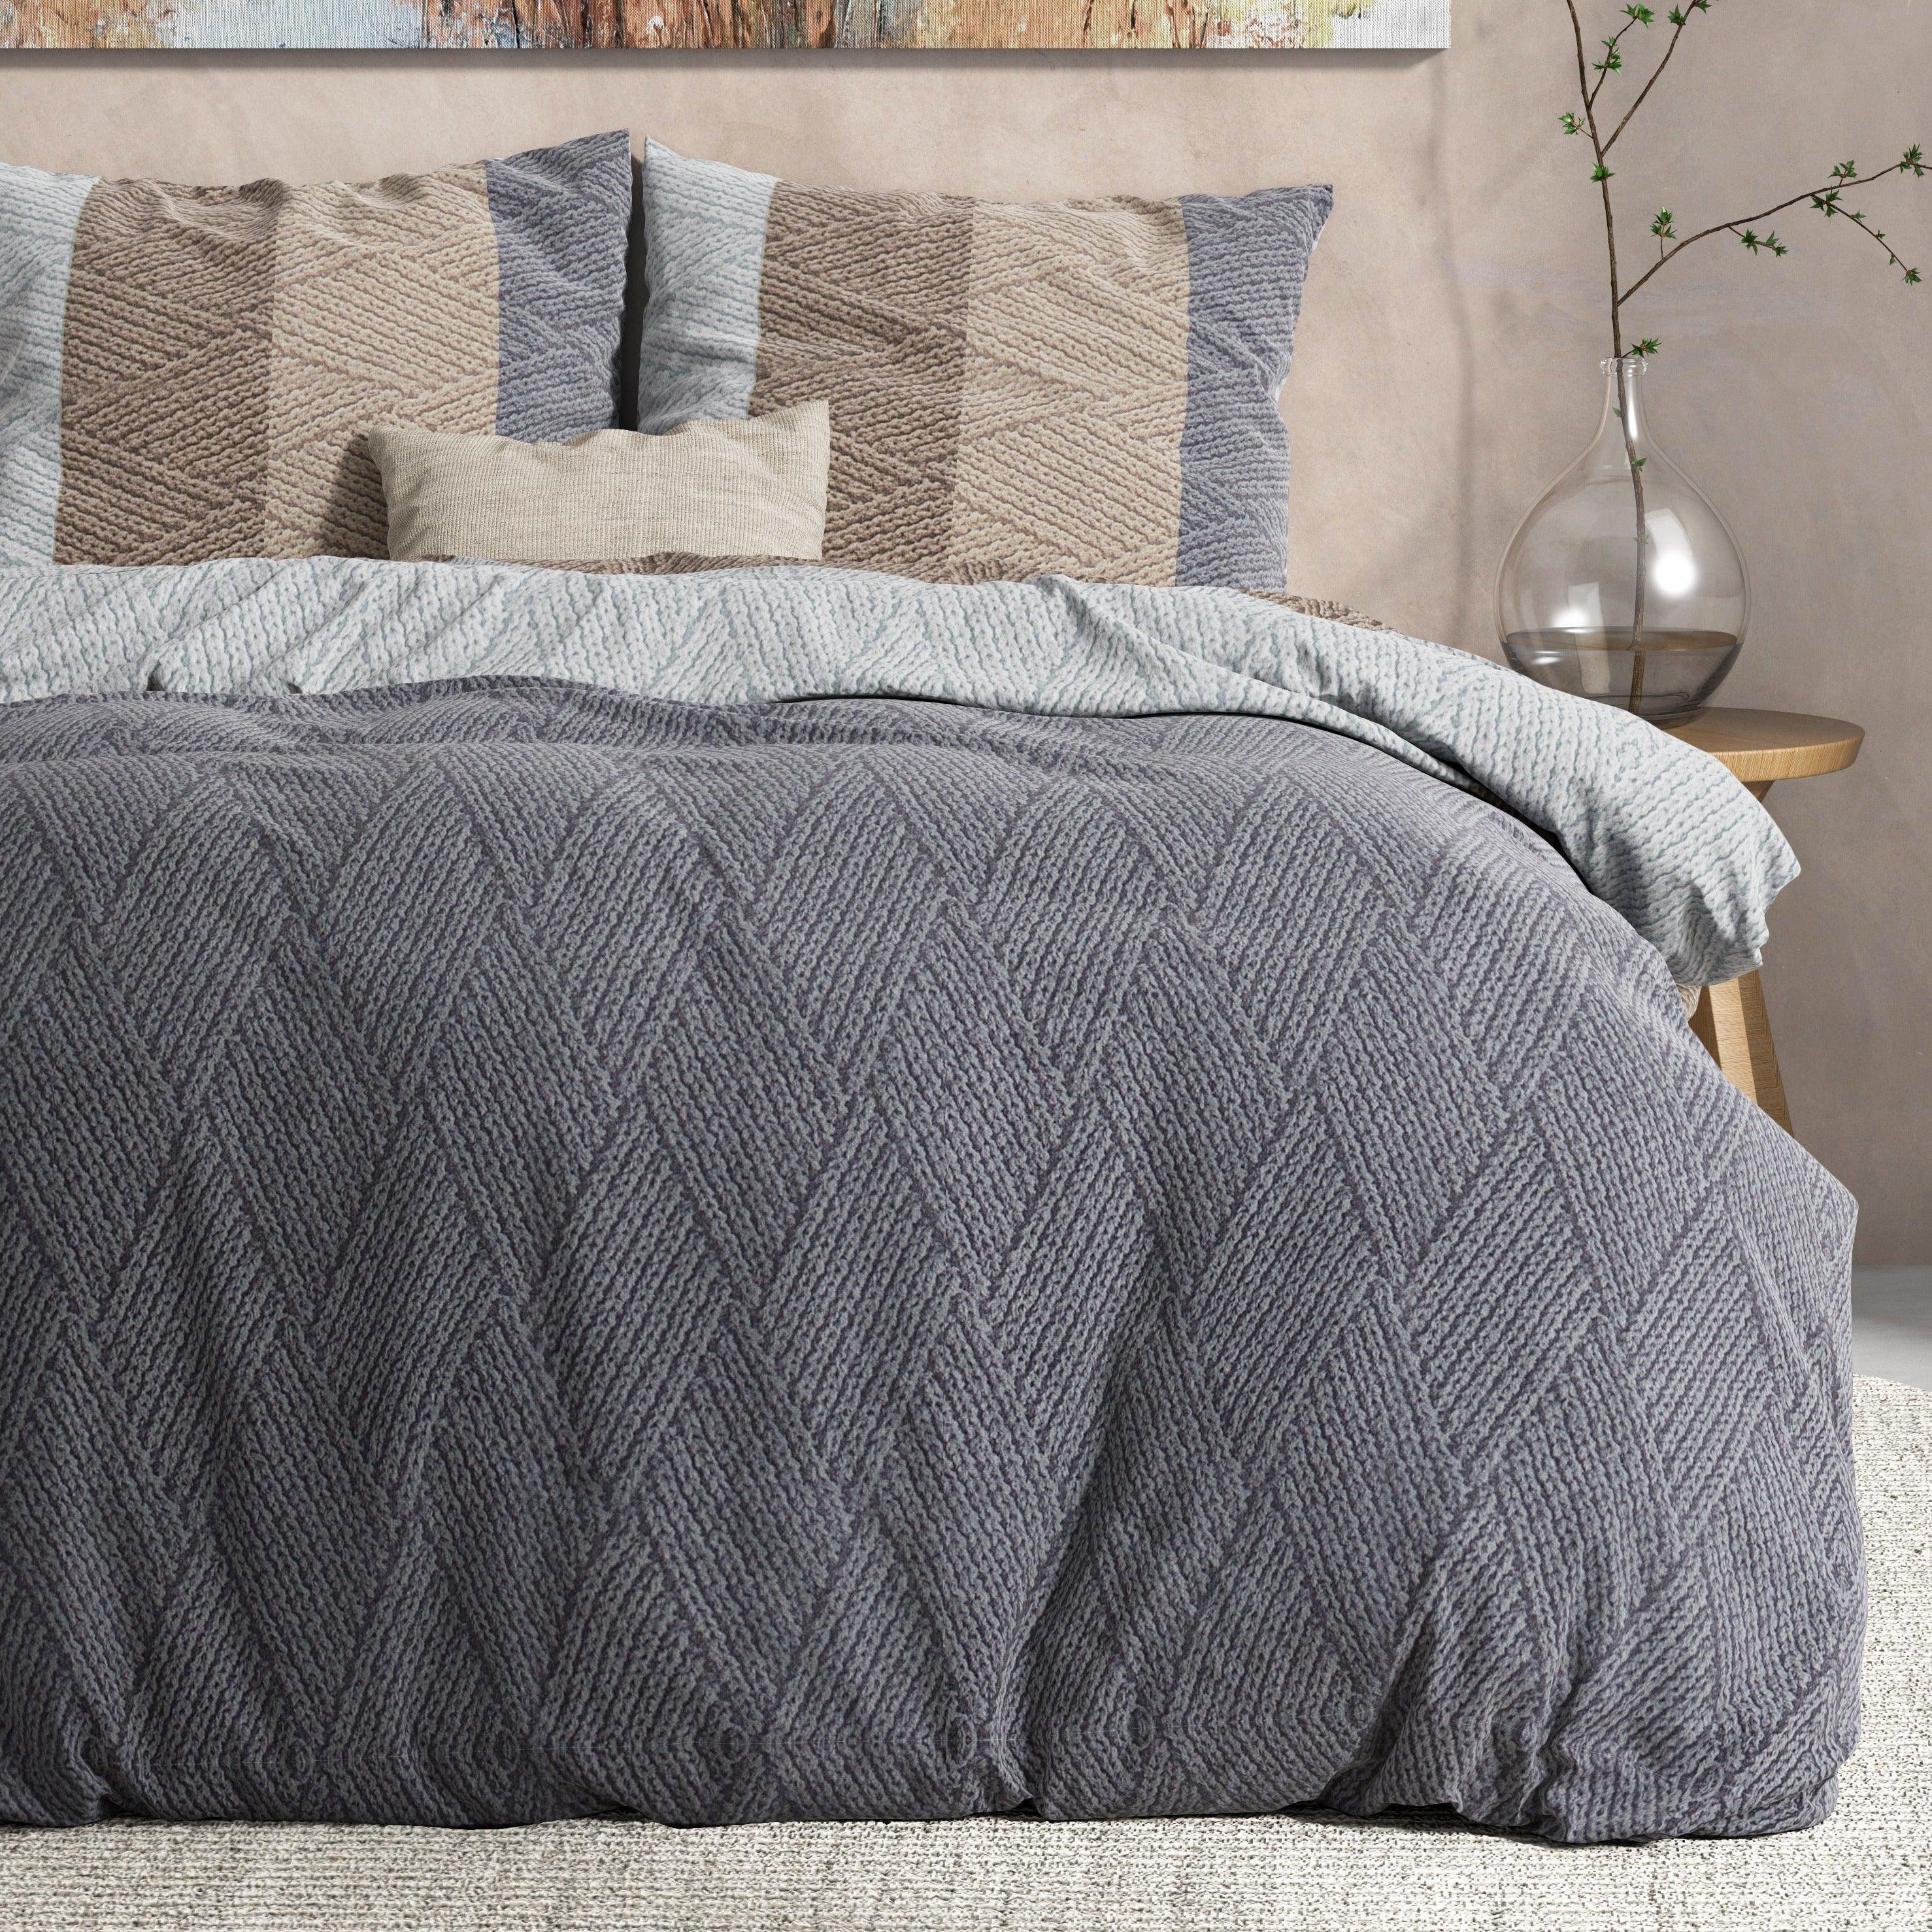 Knitty Natural Taupe/Grey flanellen dekbedovertrek set op een stijlvol opgemaakt bed.